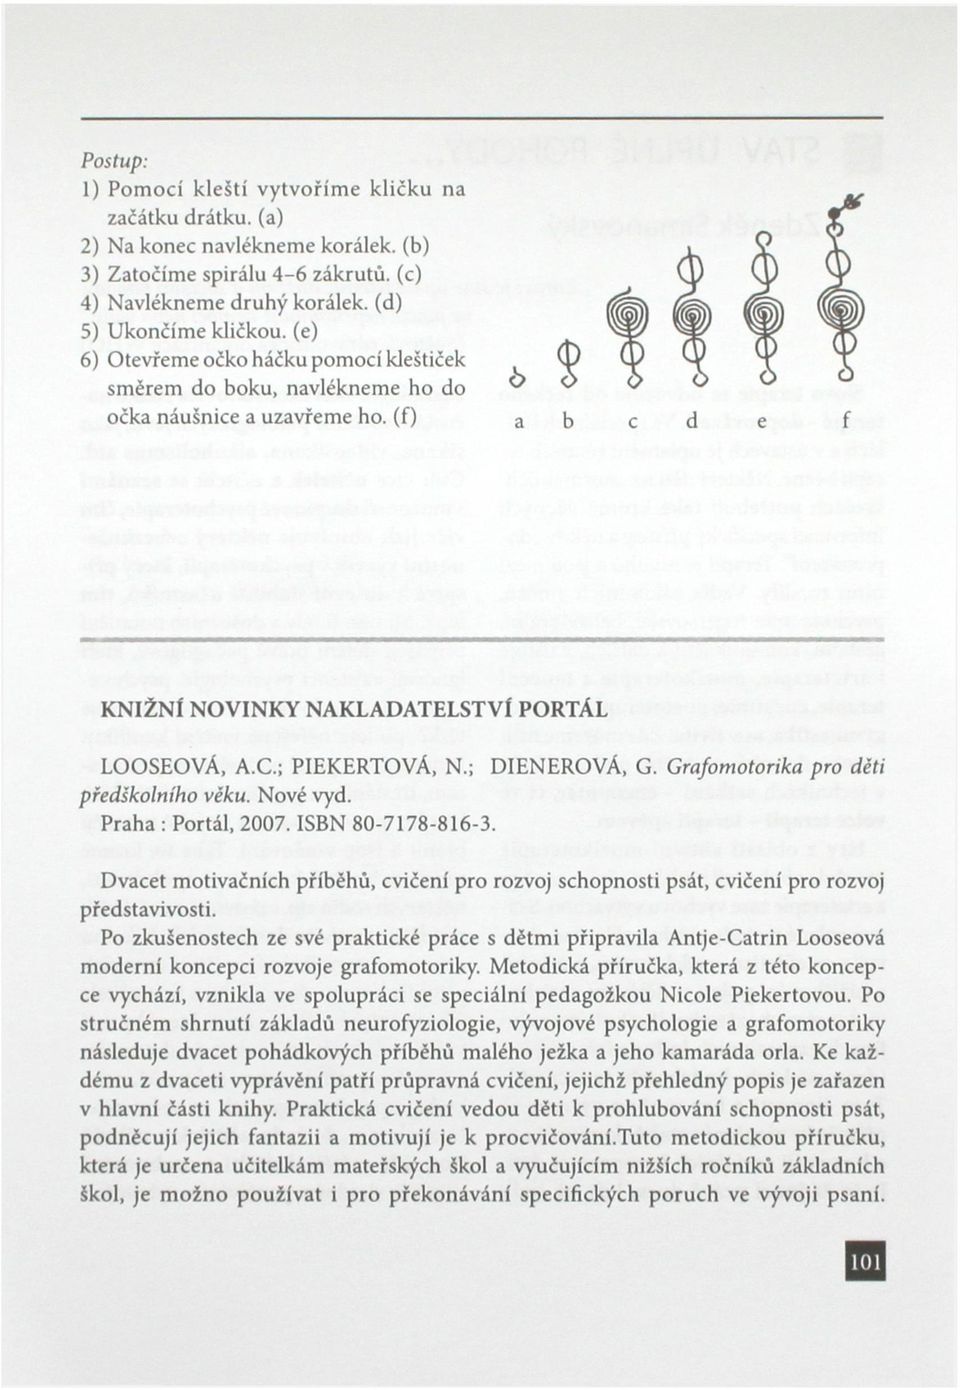 Praha : Portál, 2007. ISBN 80-7178-816-3. pro děti Dvacet motivačních příběhů, cvičení pro rozvoj schopnosti psát, cvičení pro rozvoj představivosti.